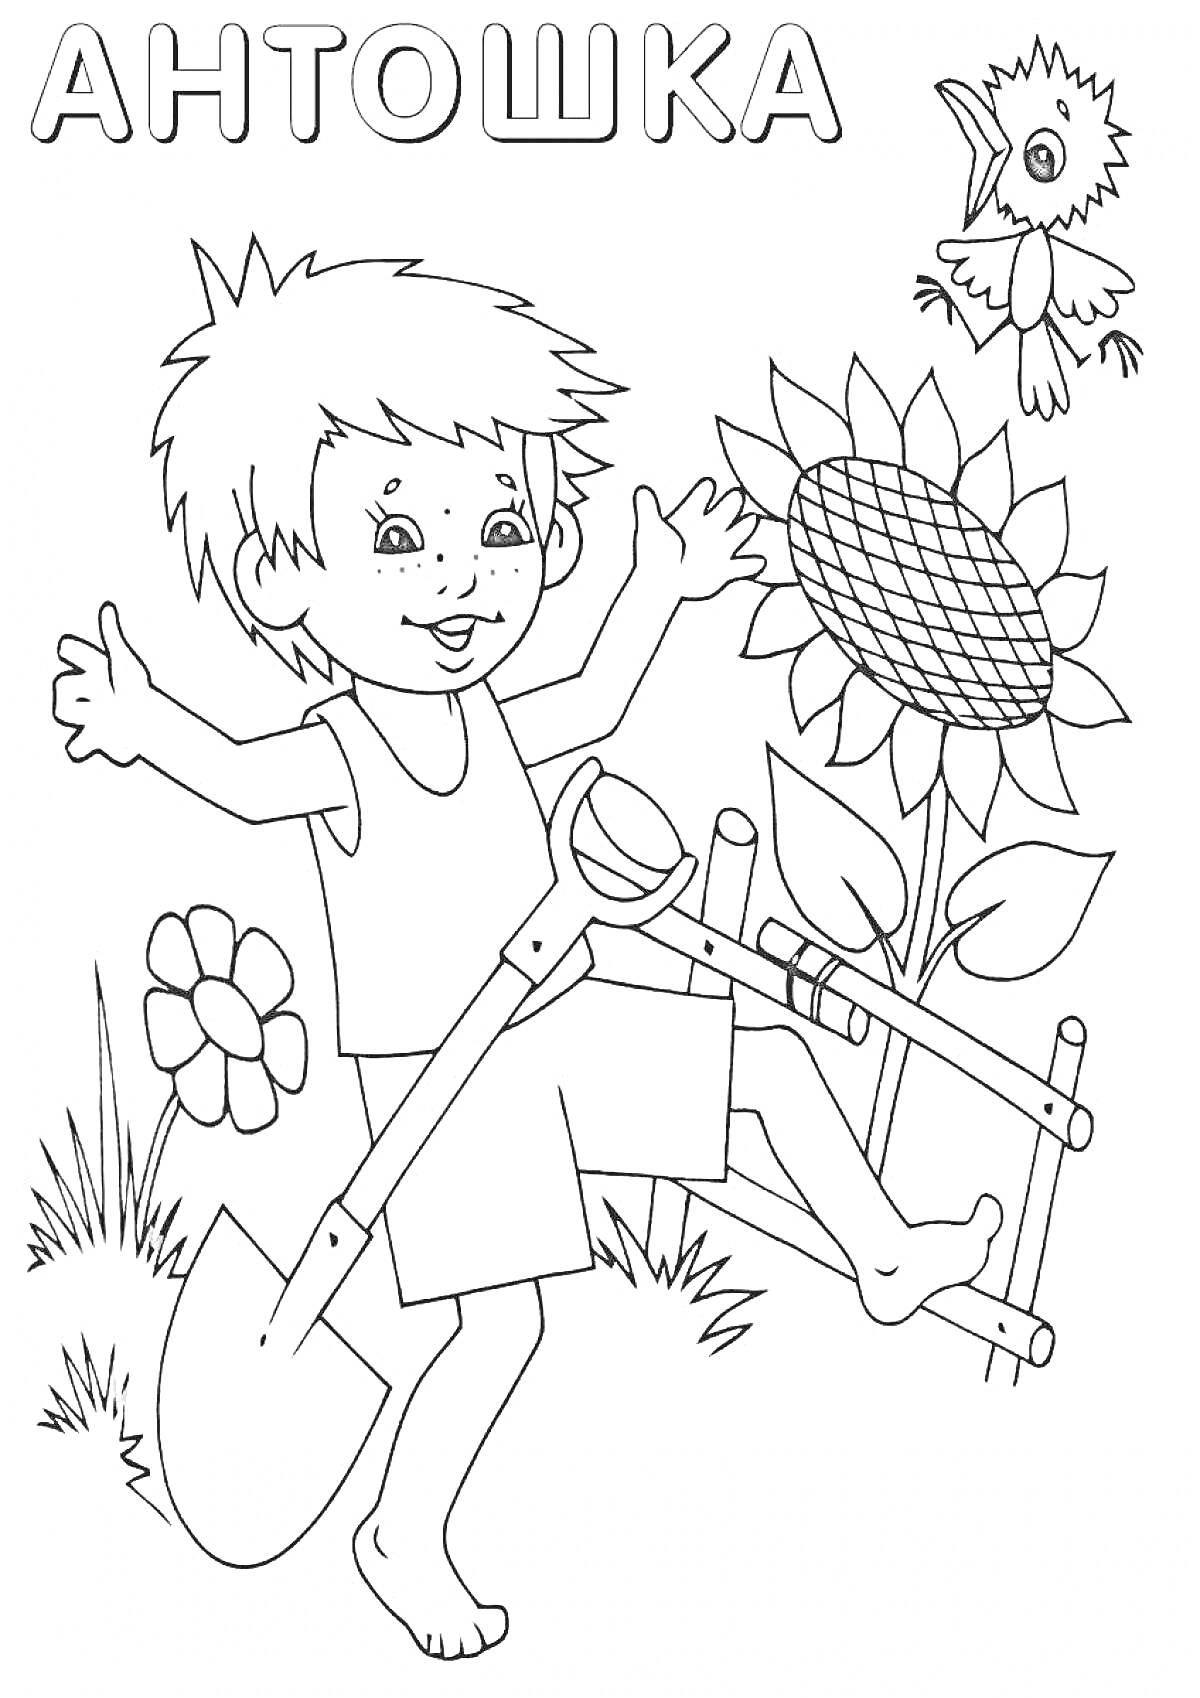 Мальчик по имени Антошка с лопатой, подсолнухом, цветком и птицей